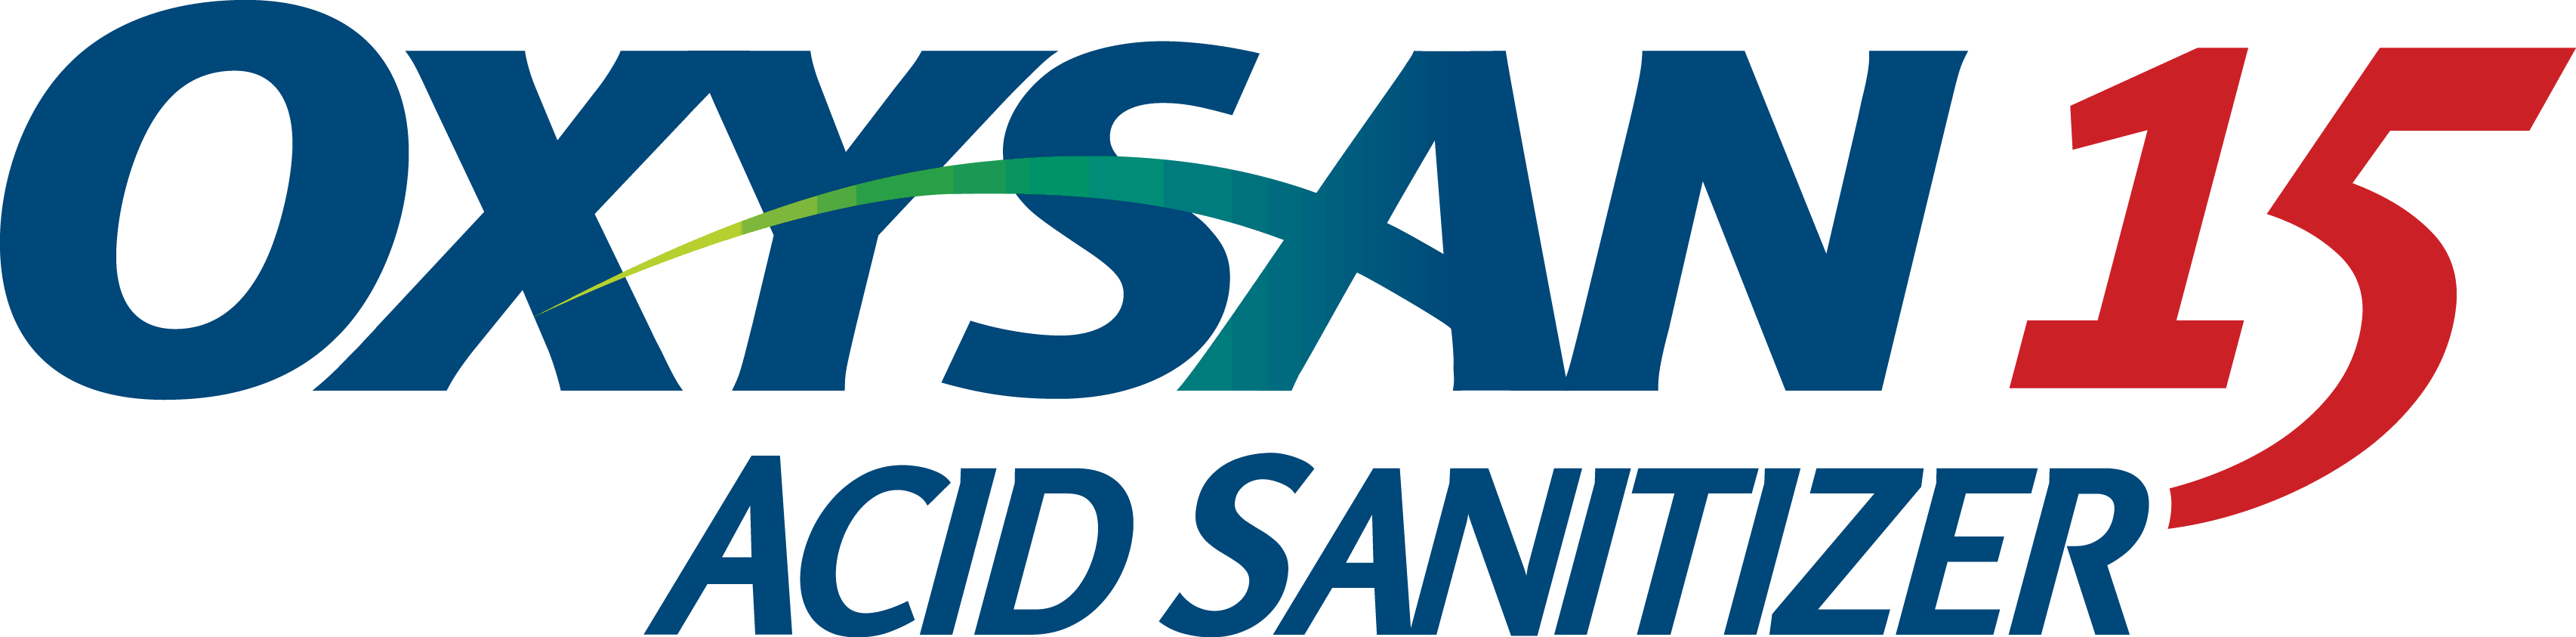 Biosan Oxysan 15 Acid Sanitizer Logo